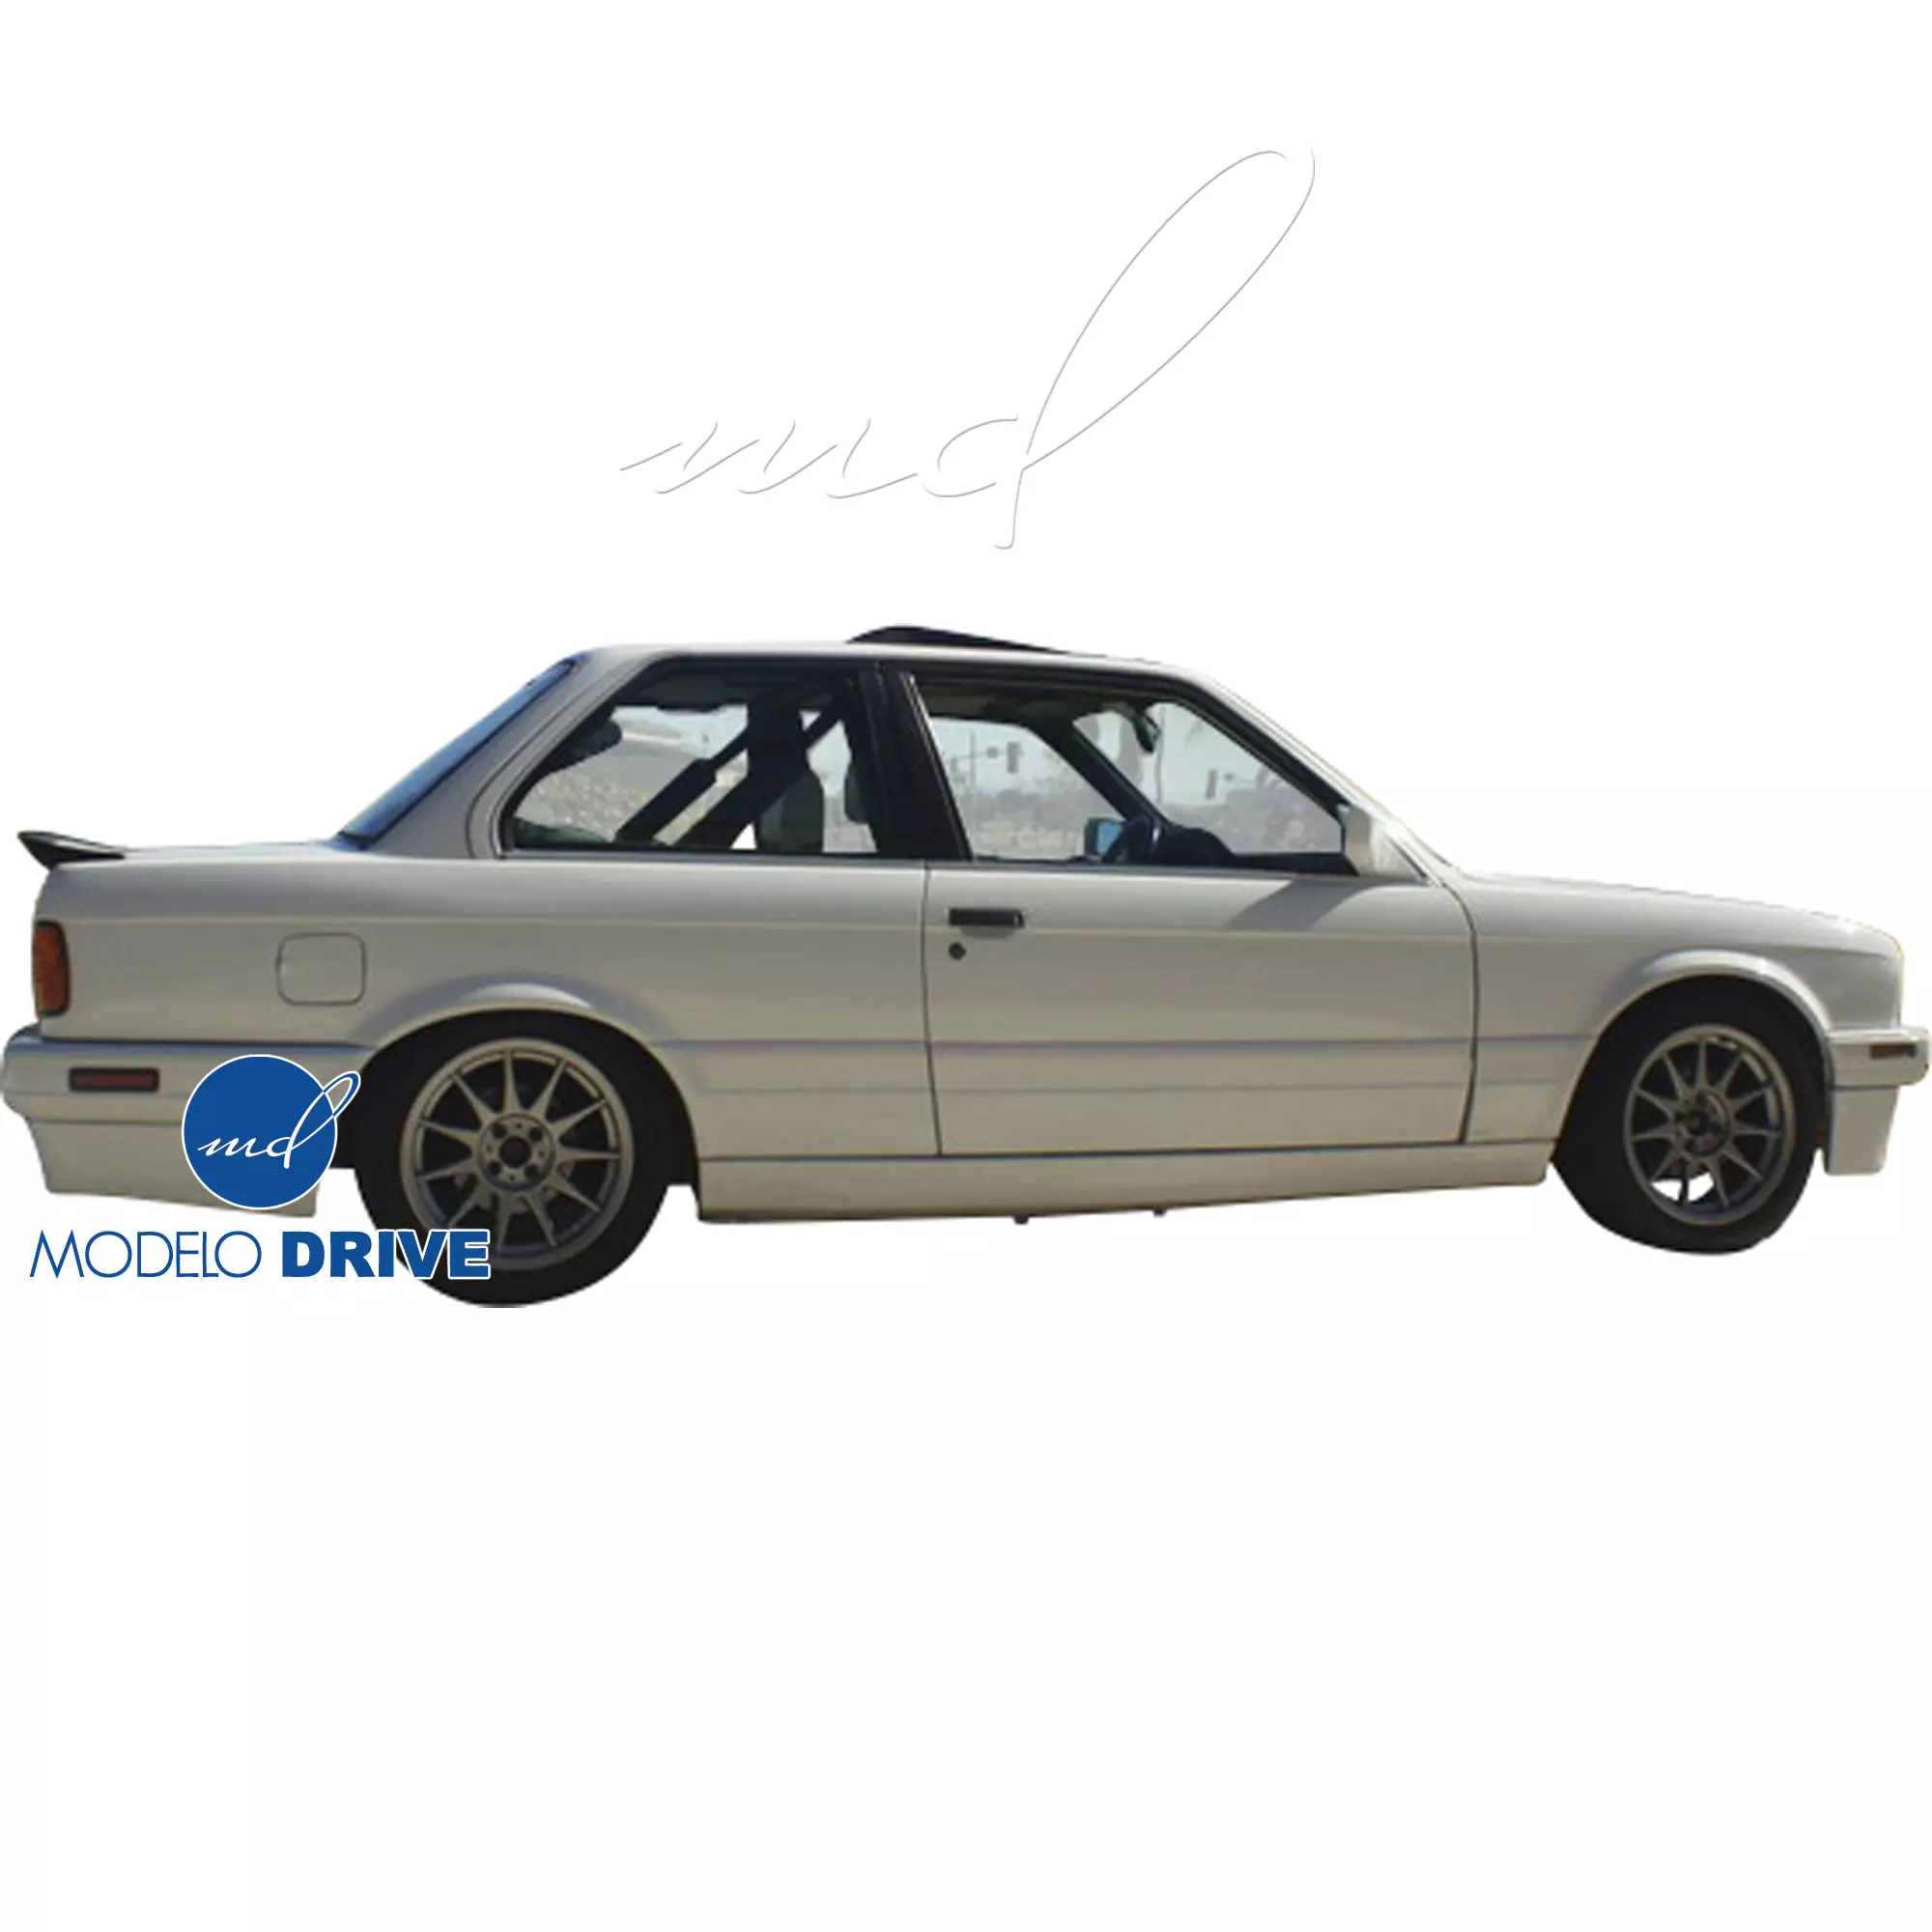 ModeloDrive FRP MTEC Side Skirts > BMW 3-Series 318i 325i E30 1984-1991 > 2dr Coupe - Image 5